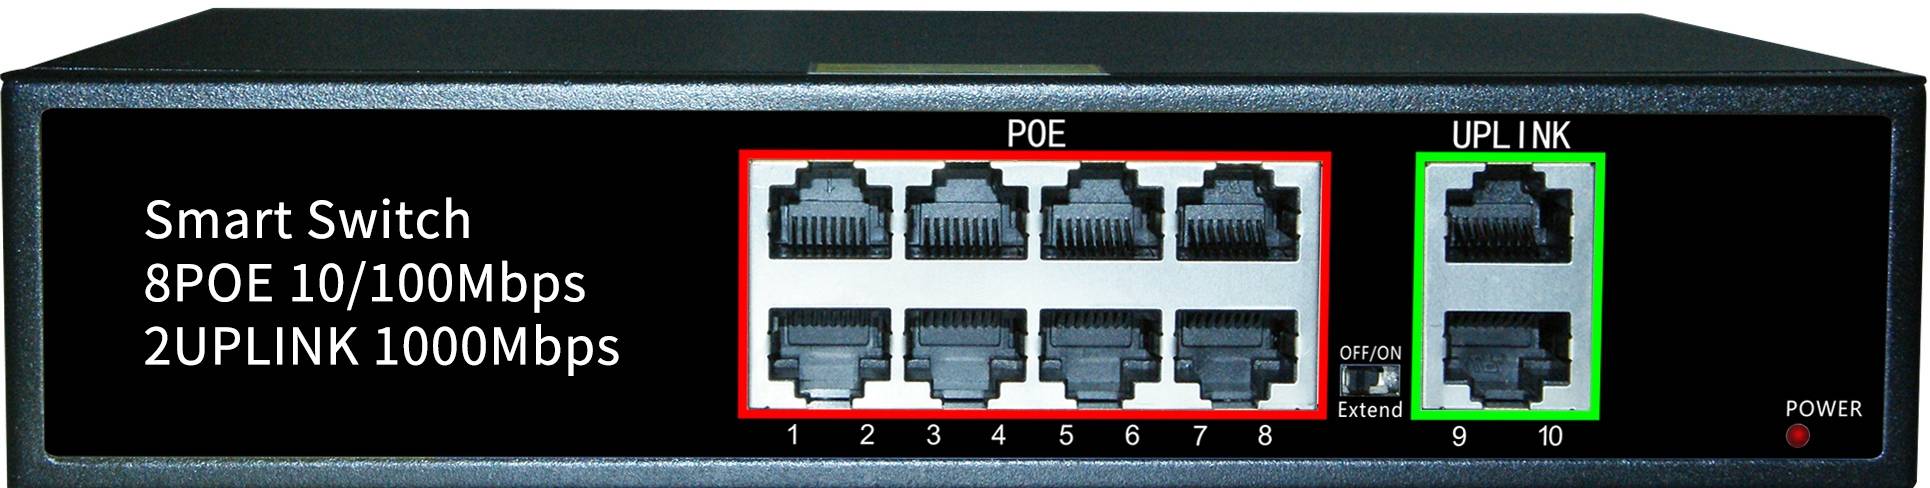 Giới thiệu sản phẩm Switch PoE 8 cổng